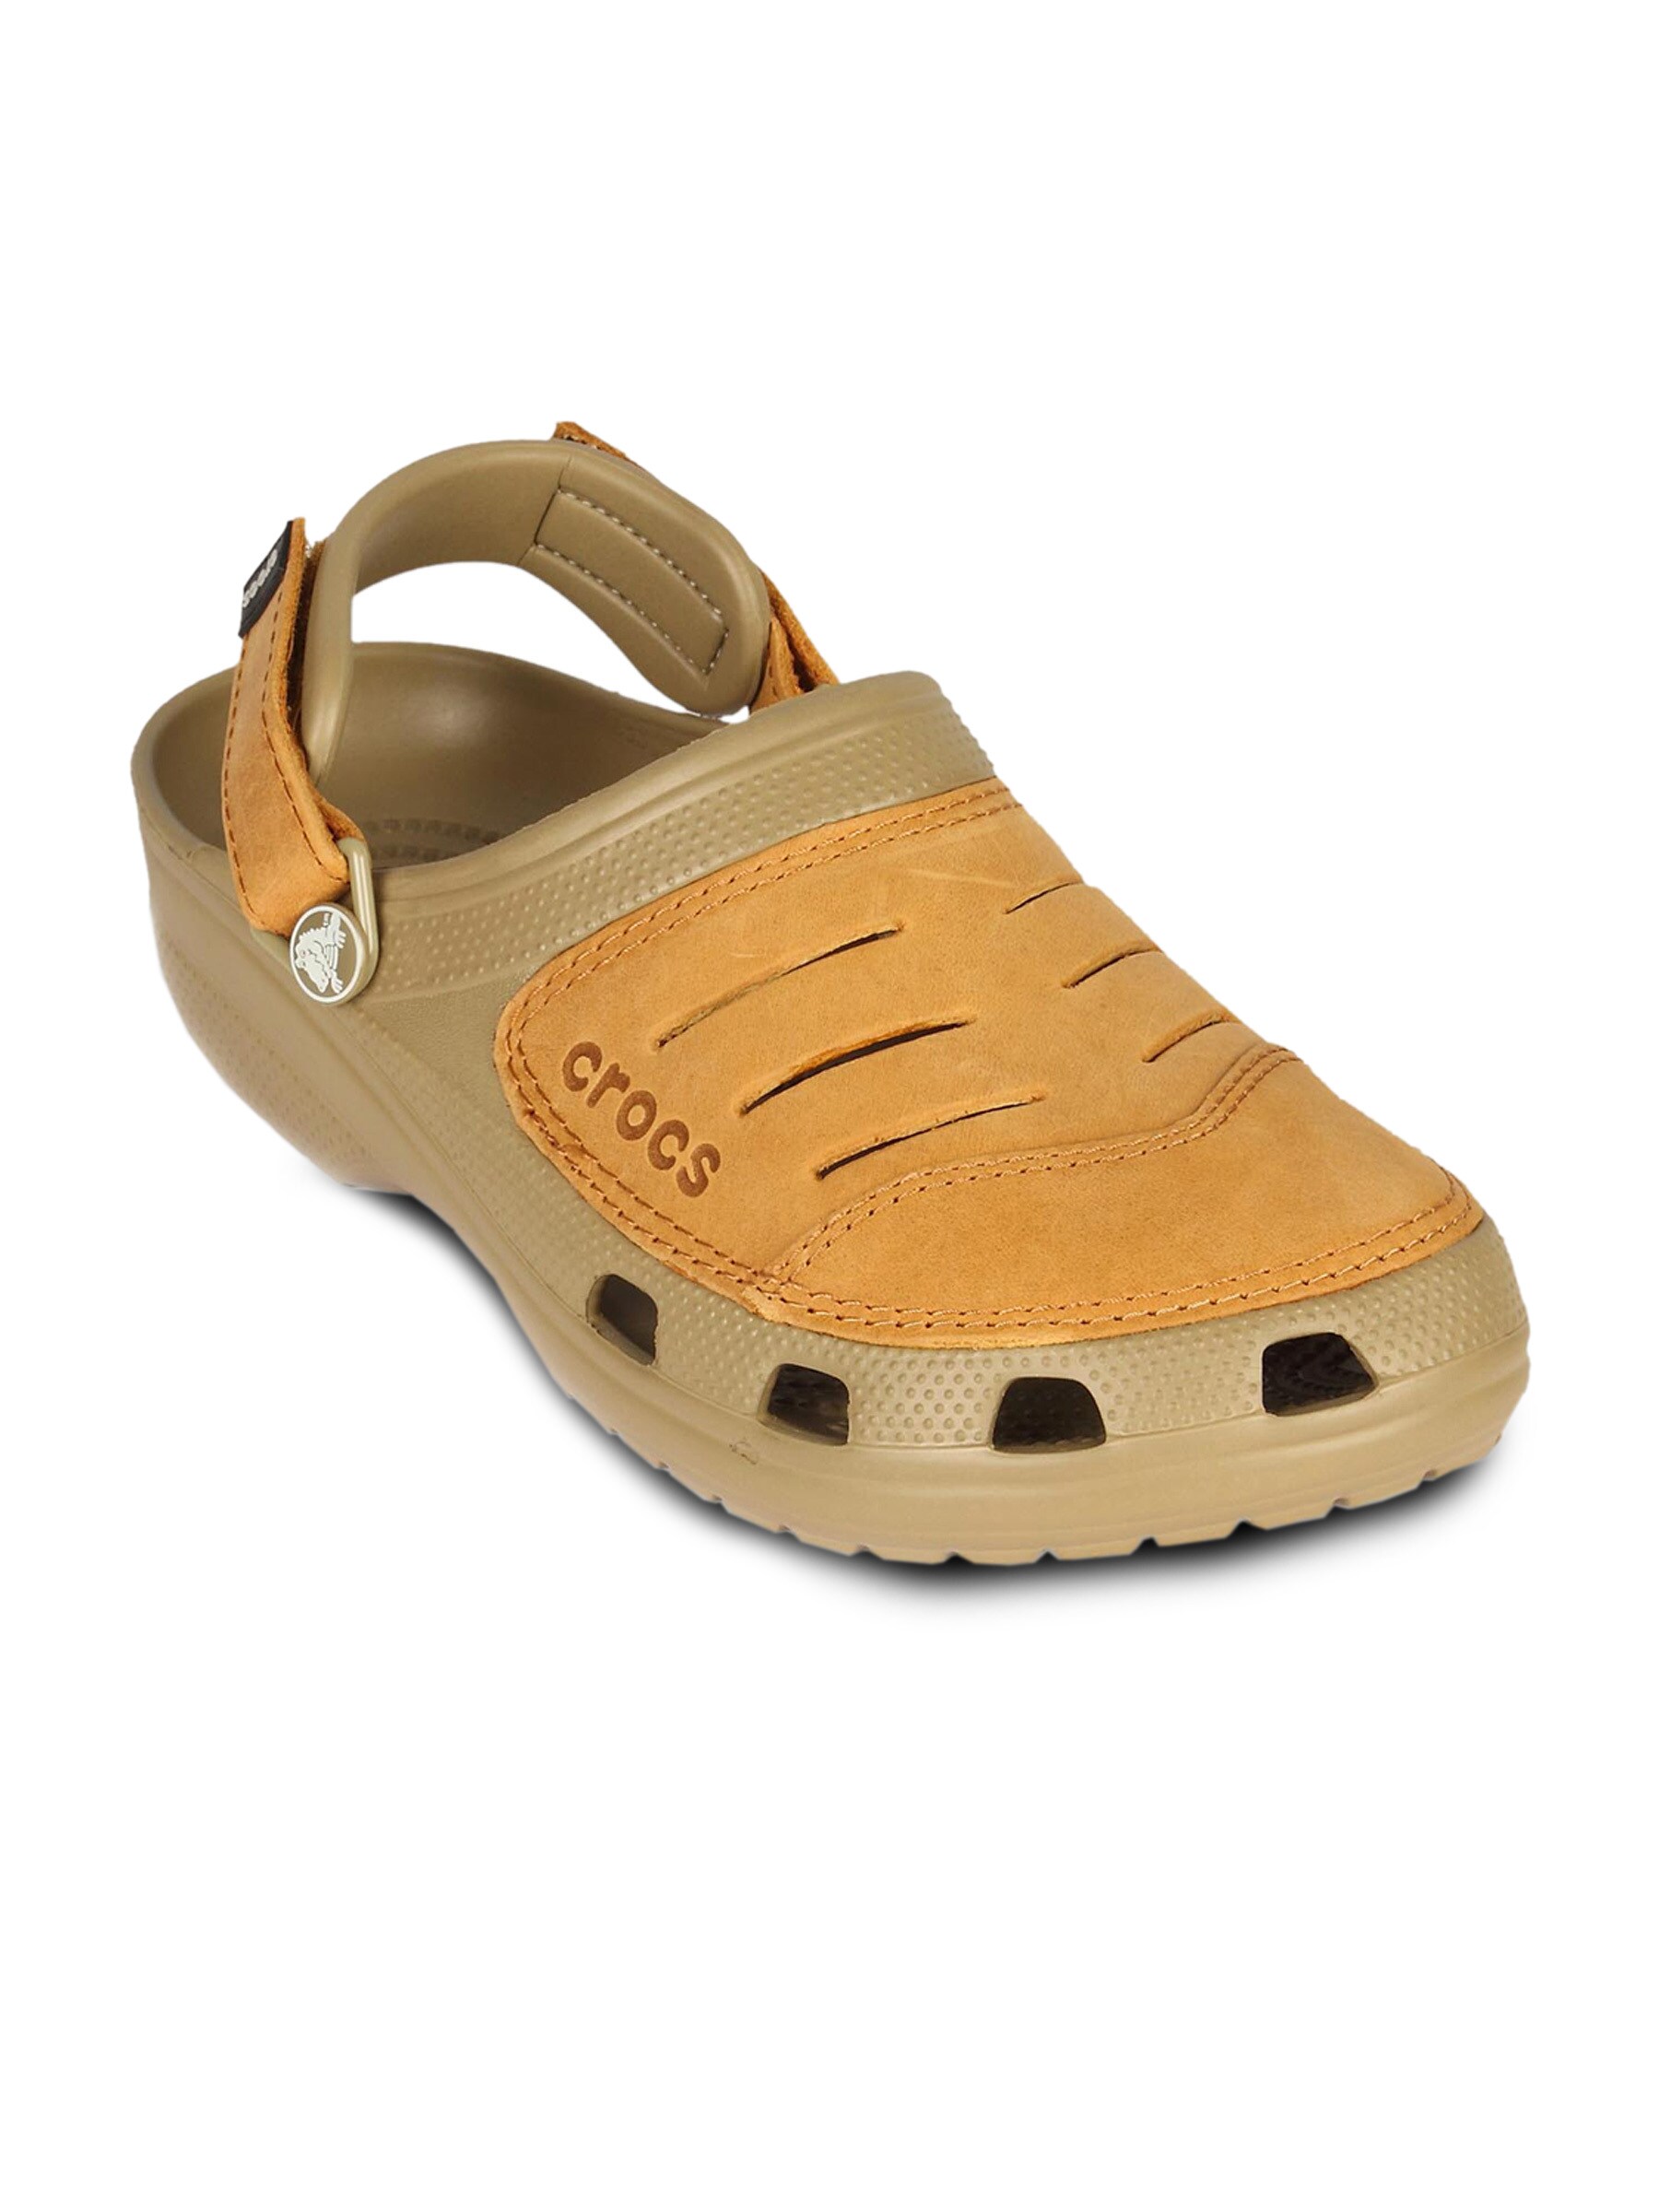 Crocs Men Yukon Khaki Brown Sandal